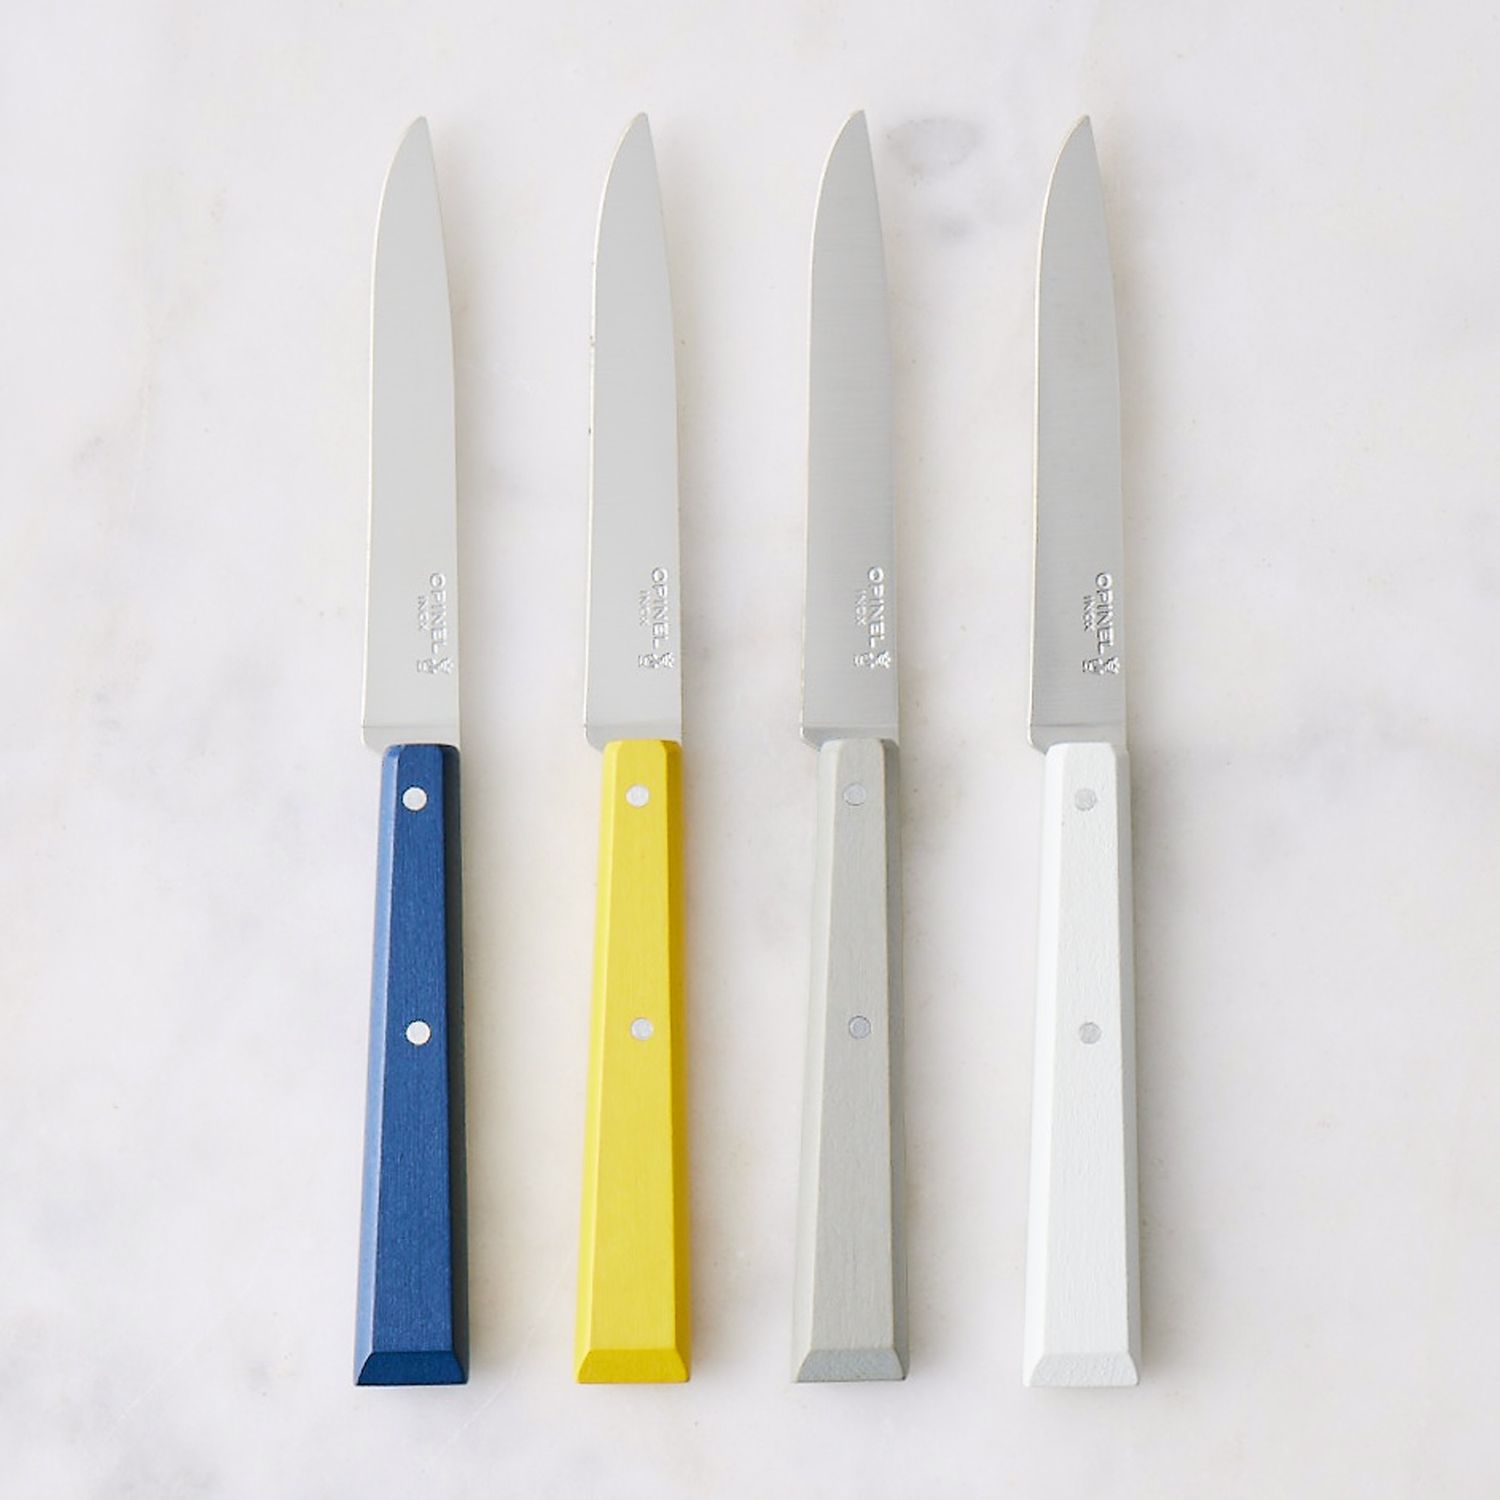 Opinel Set of 4 Bon Appetit Steak Knives - Celeste